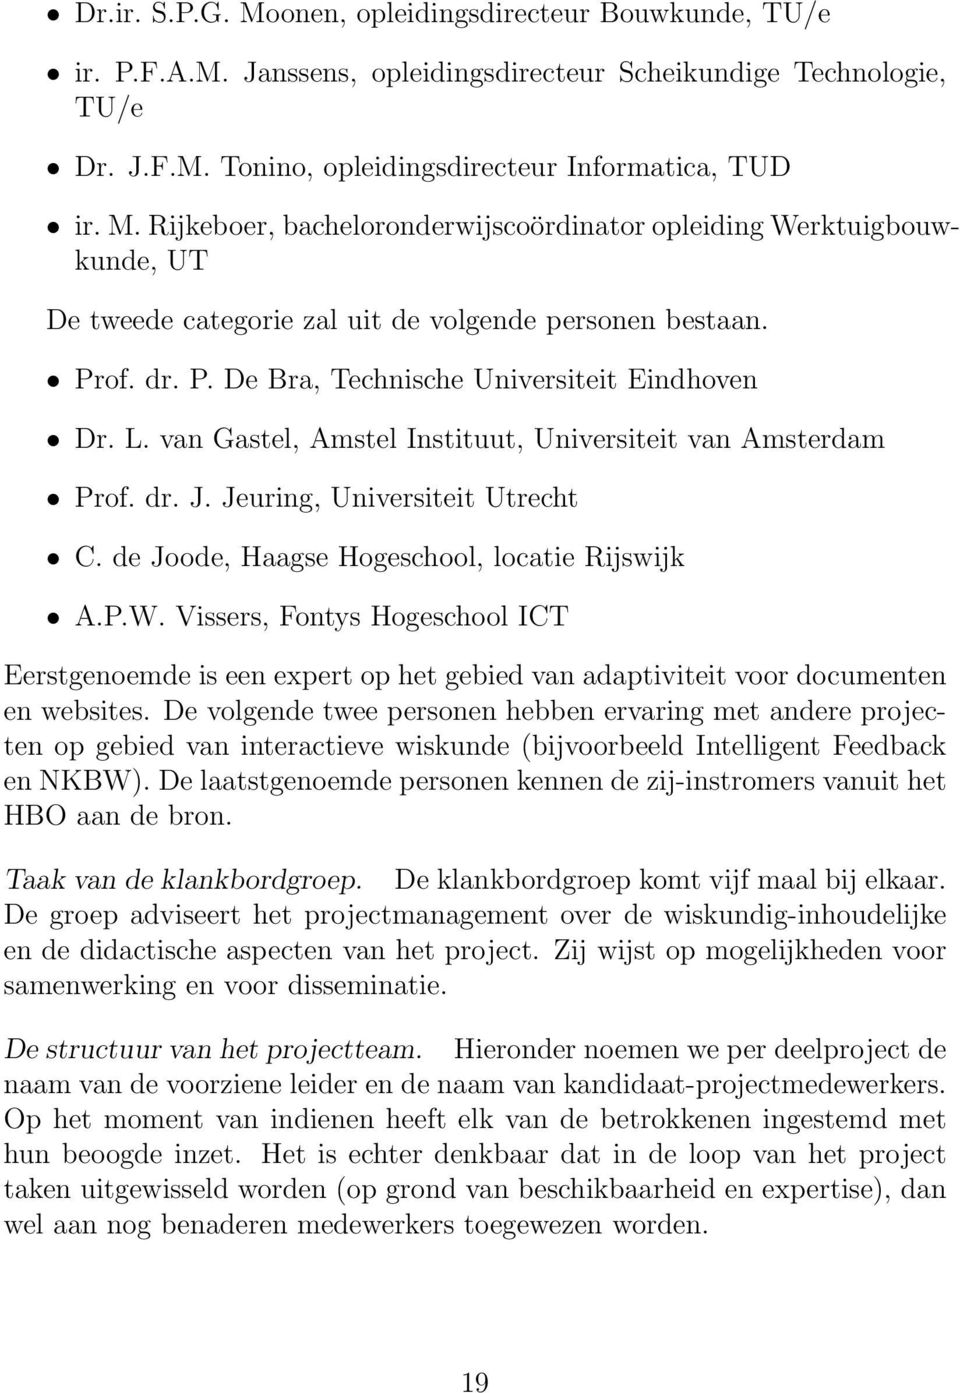 de Joode, Haagse Hogeschool, locatie Rijswijk A.P.W. Vissers, Fontys Hogeschool ICT Eerstgenoemde is een expert op het gebied van adaptiviteit voor documenten en websites.